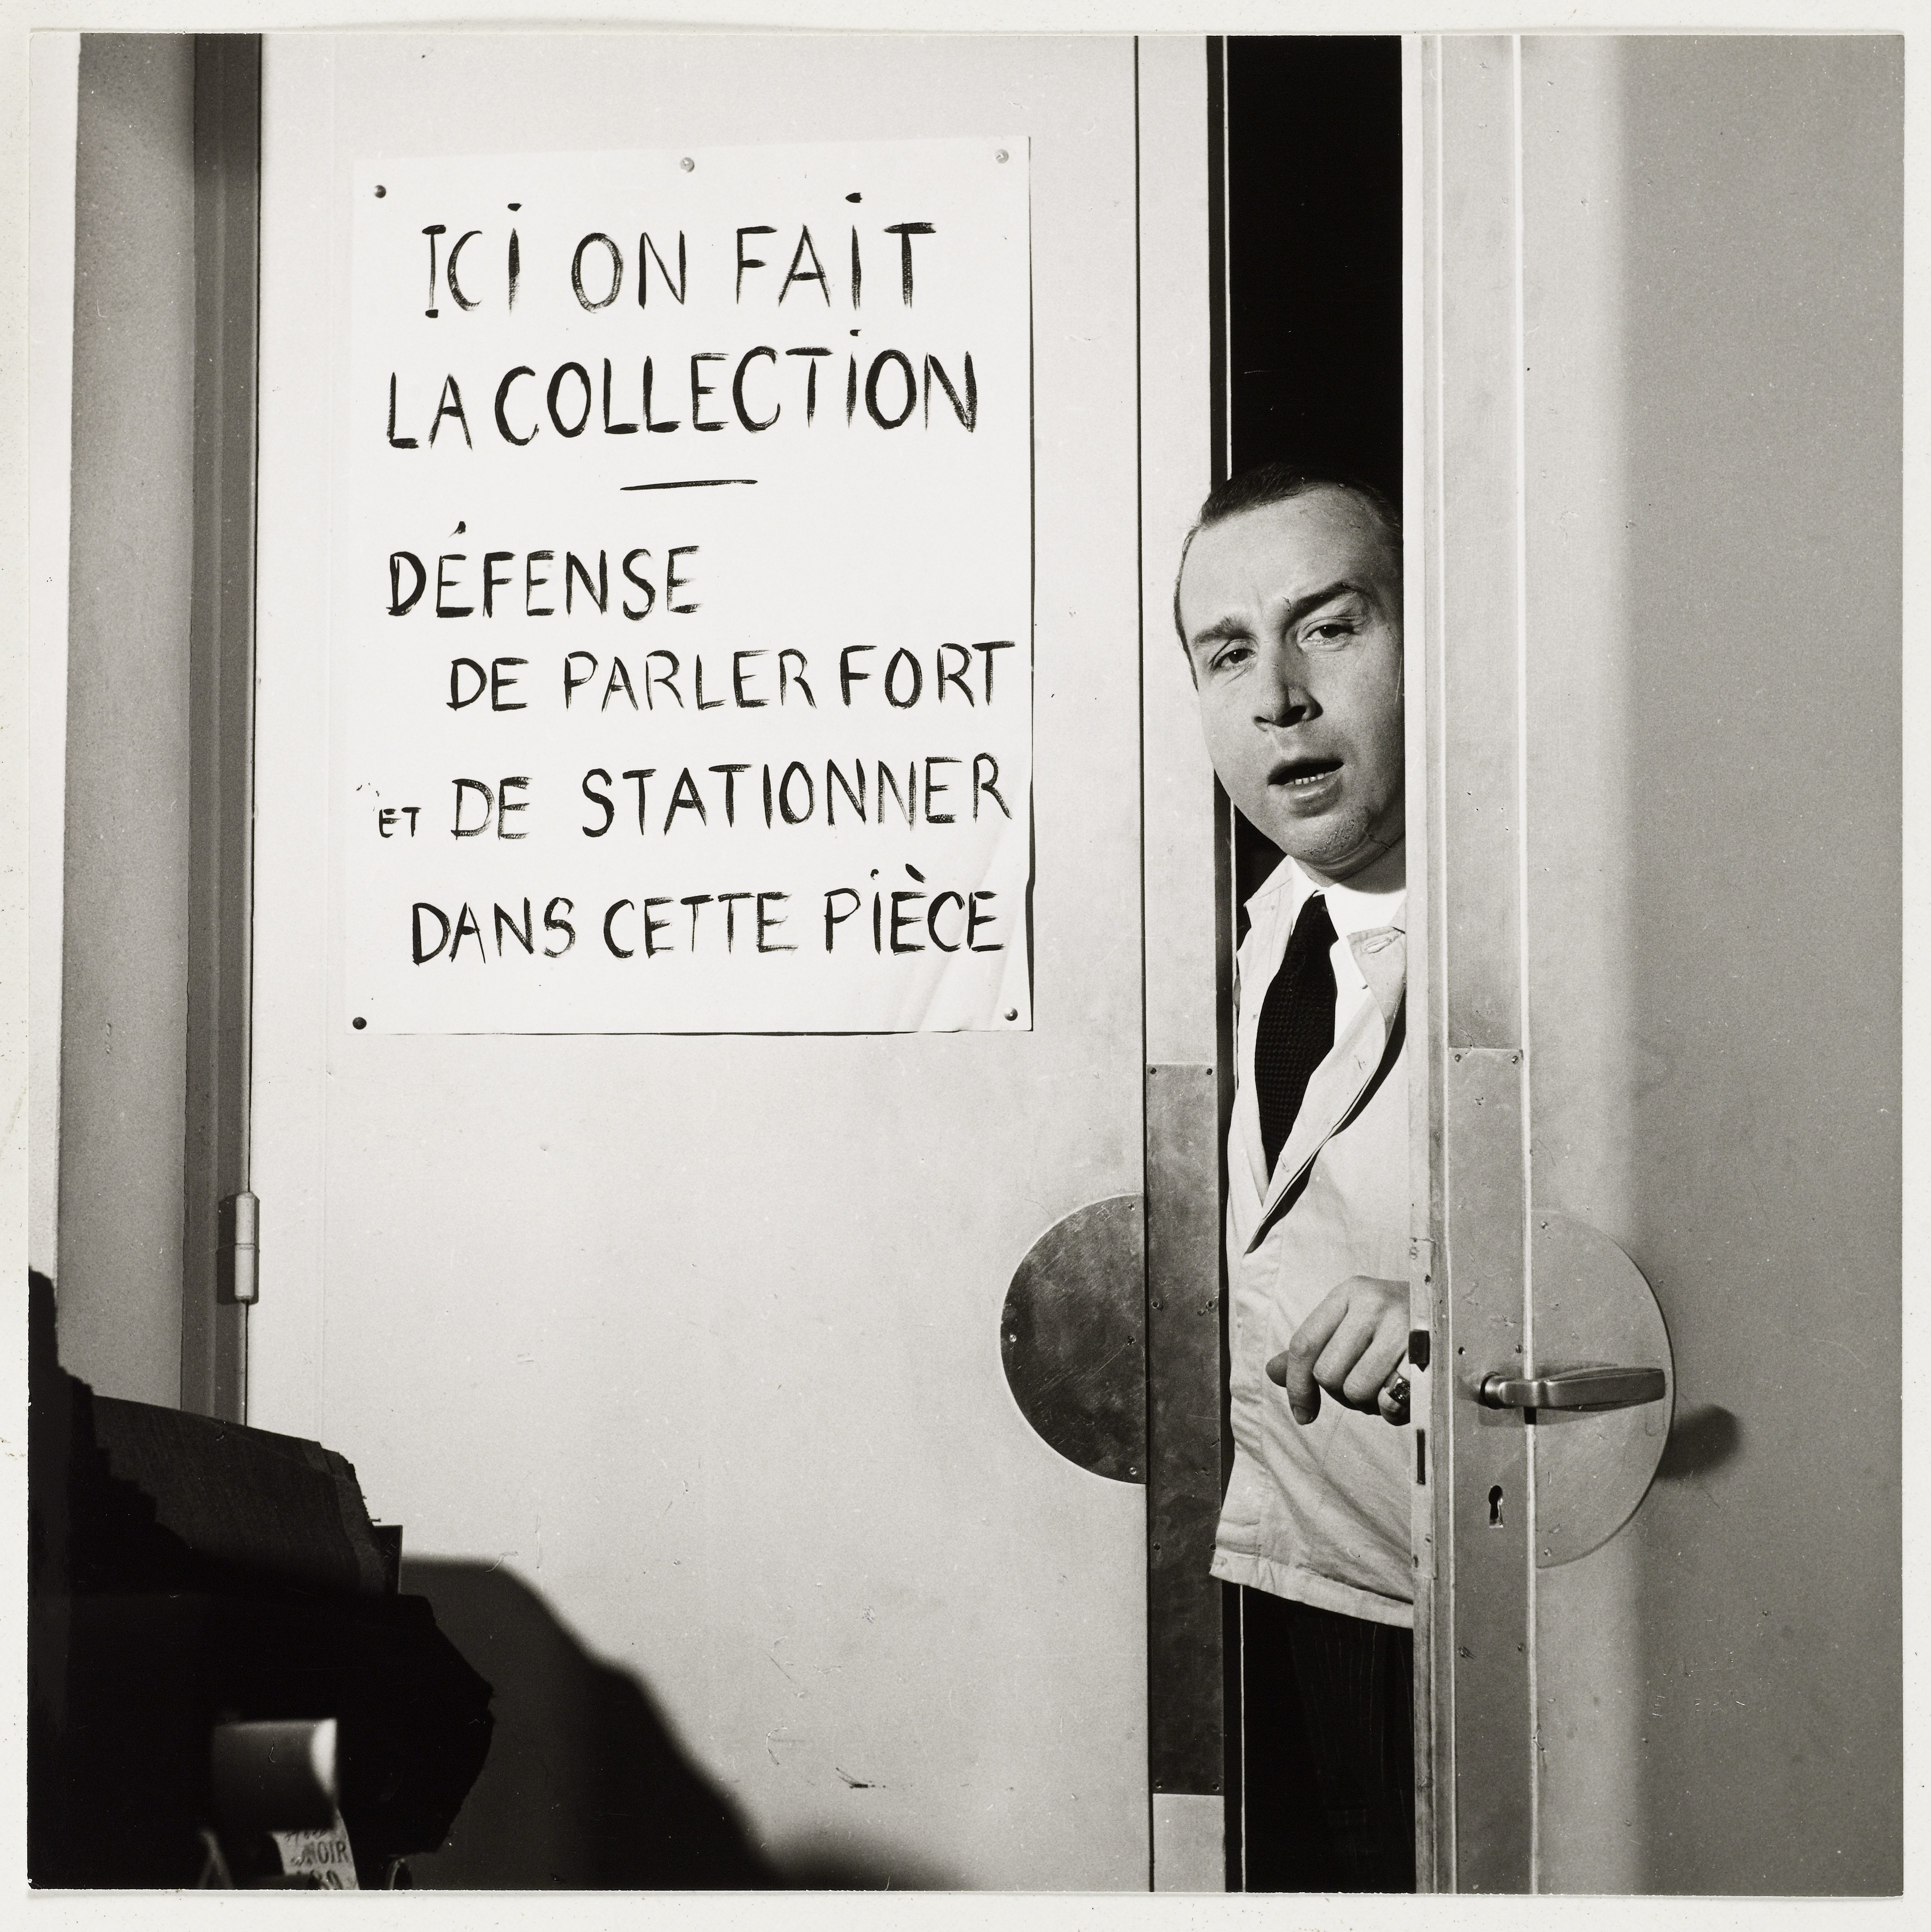 Antonio Castillo pseudonyme de Canovas del Castillo del Rey (1908-1984). Couturier. Dessinateur chez Chanel, R. Piguet et Paquin, puis directeur artistique de la maison Jeanne Lanvin à Paris jusqu'en 1962. Ouvre sa propre maison de couture en 1964. En pied, dans l'embrasure d'une porte, chez Lanvin